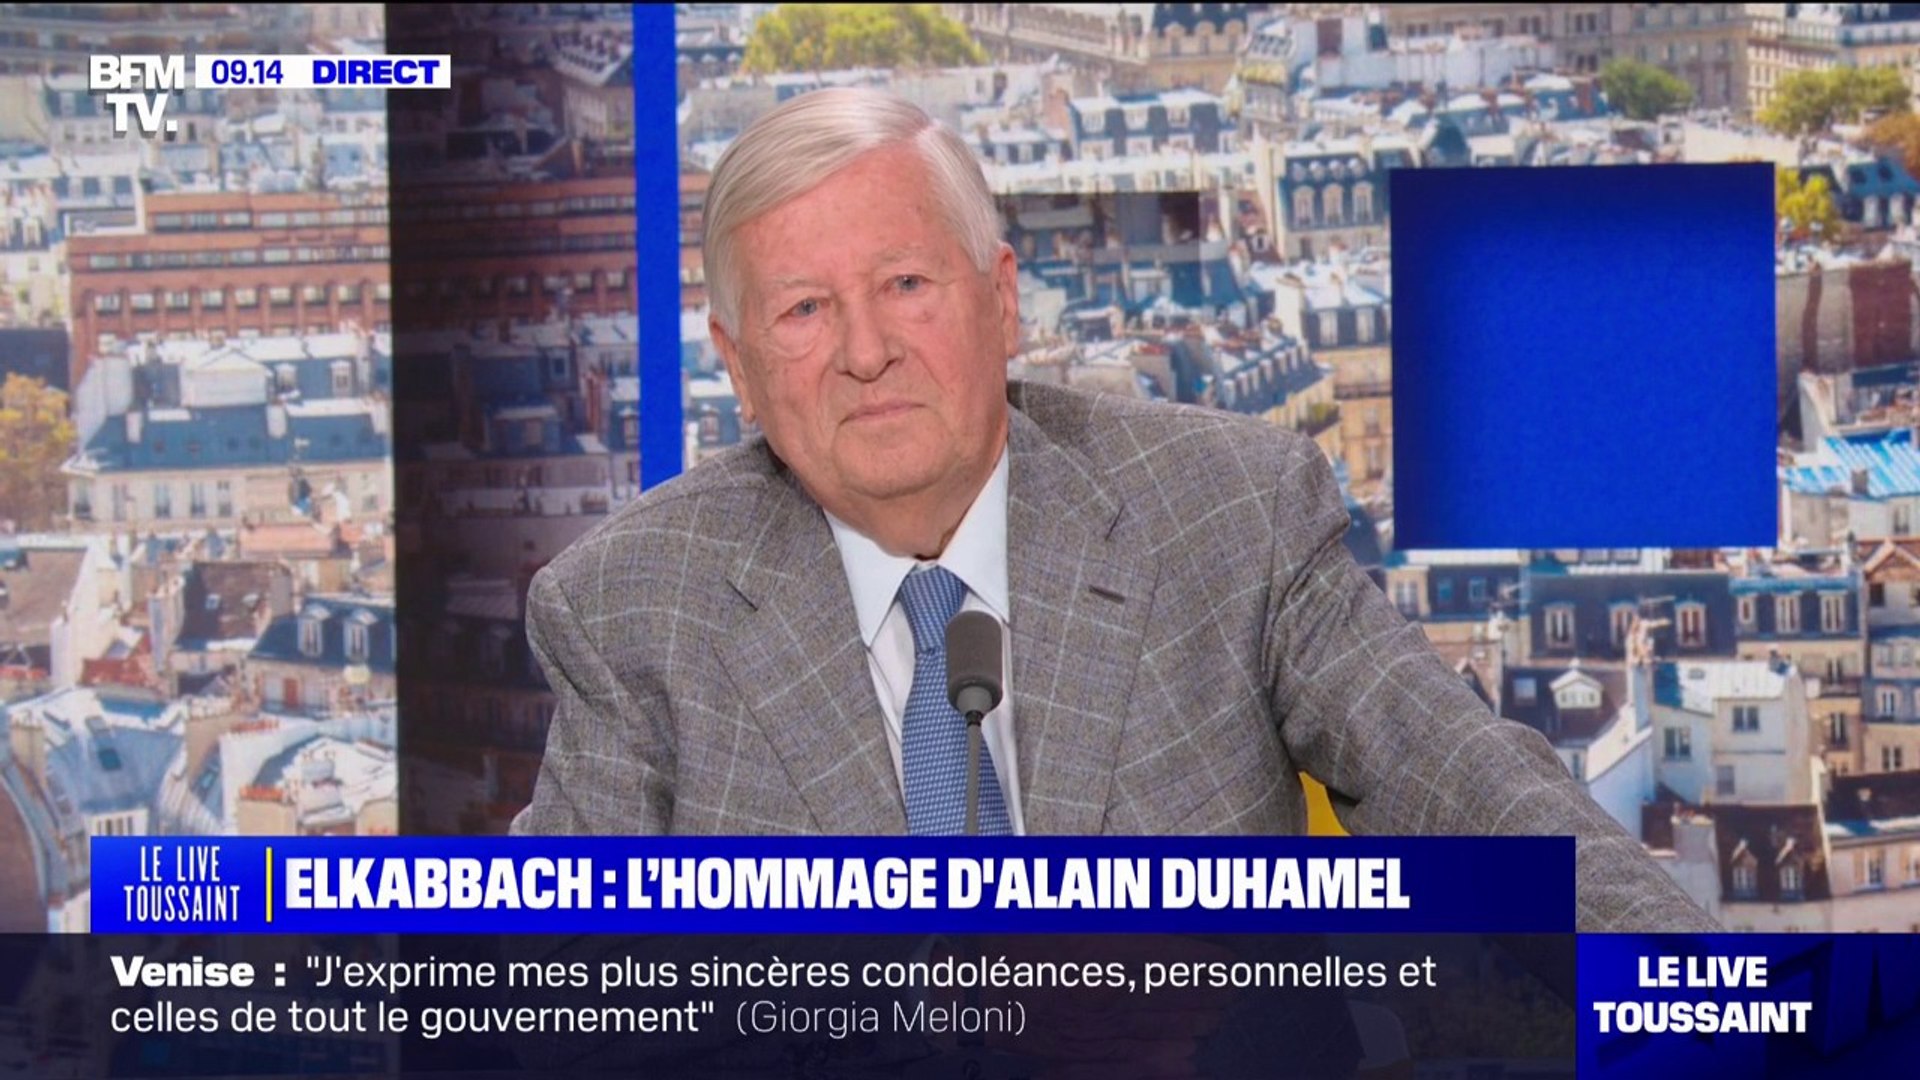 Alain Duhamel Epouse Jean-Pierre Elkabbach: "Quand Nicole [son épouse] m'a dit que c'était fini,  je me suis senti un peu mort aussi", confie Alain Duhamel - Vidéo  Dailymotion